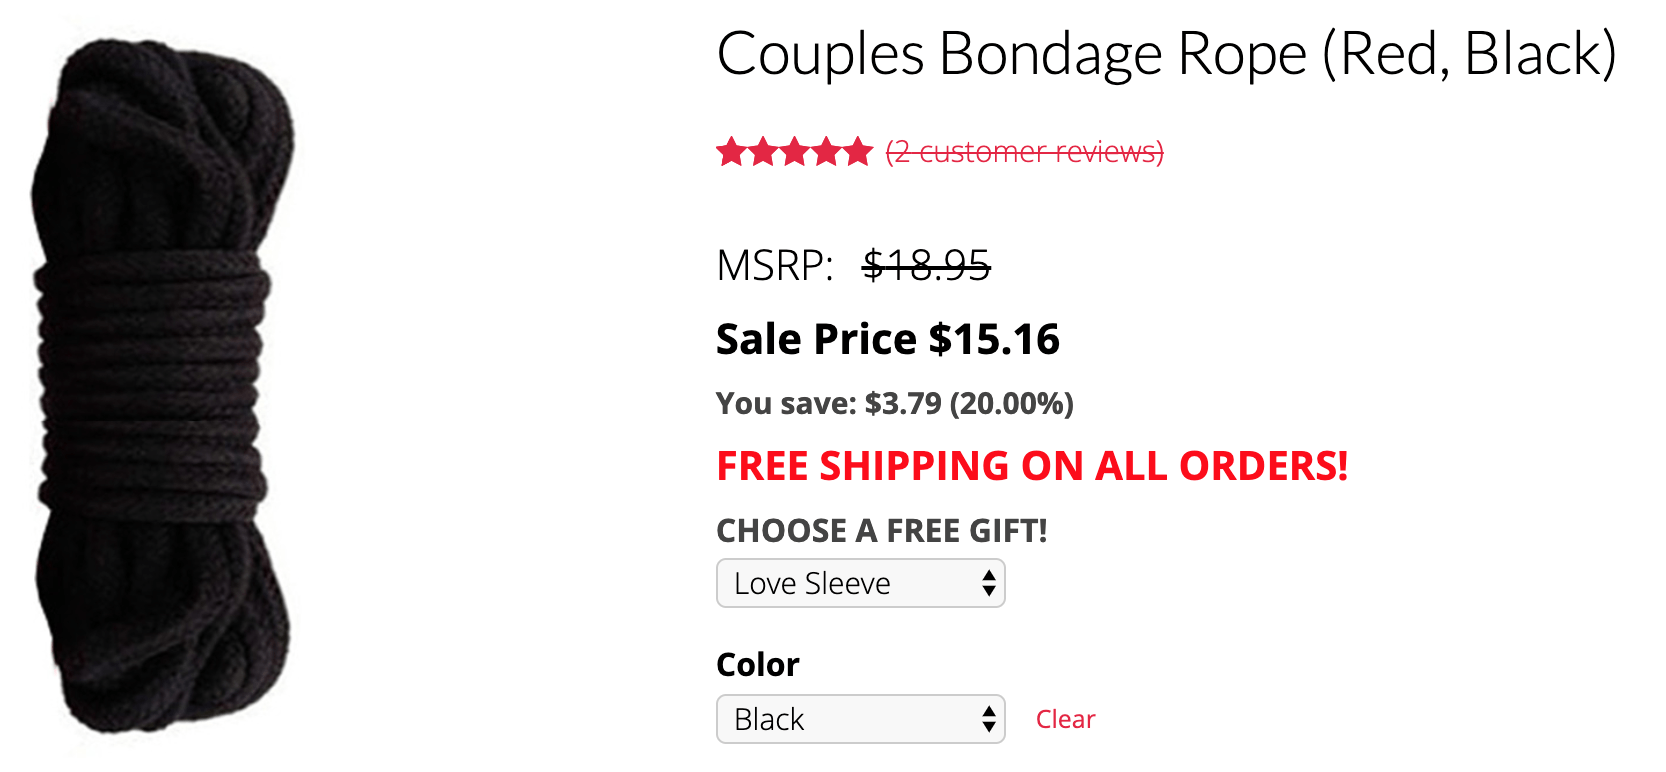 Couples Bondage Rope